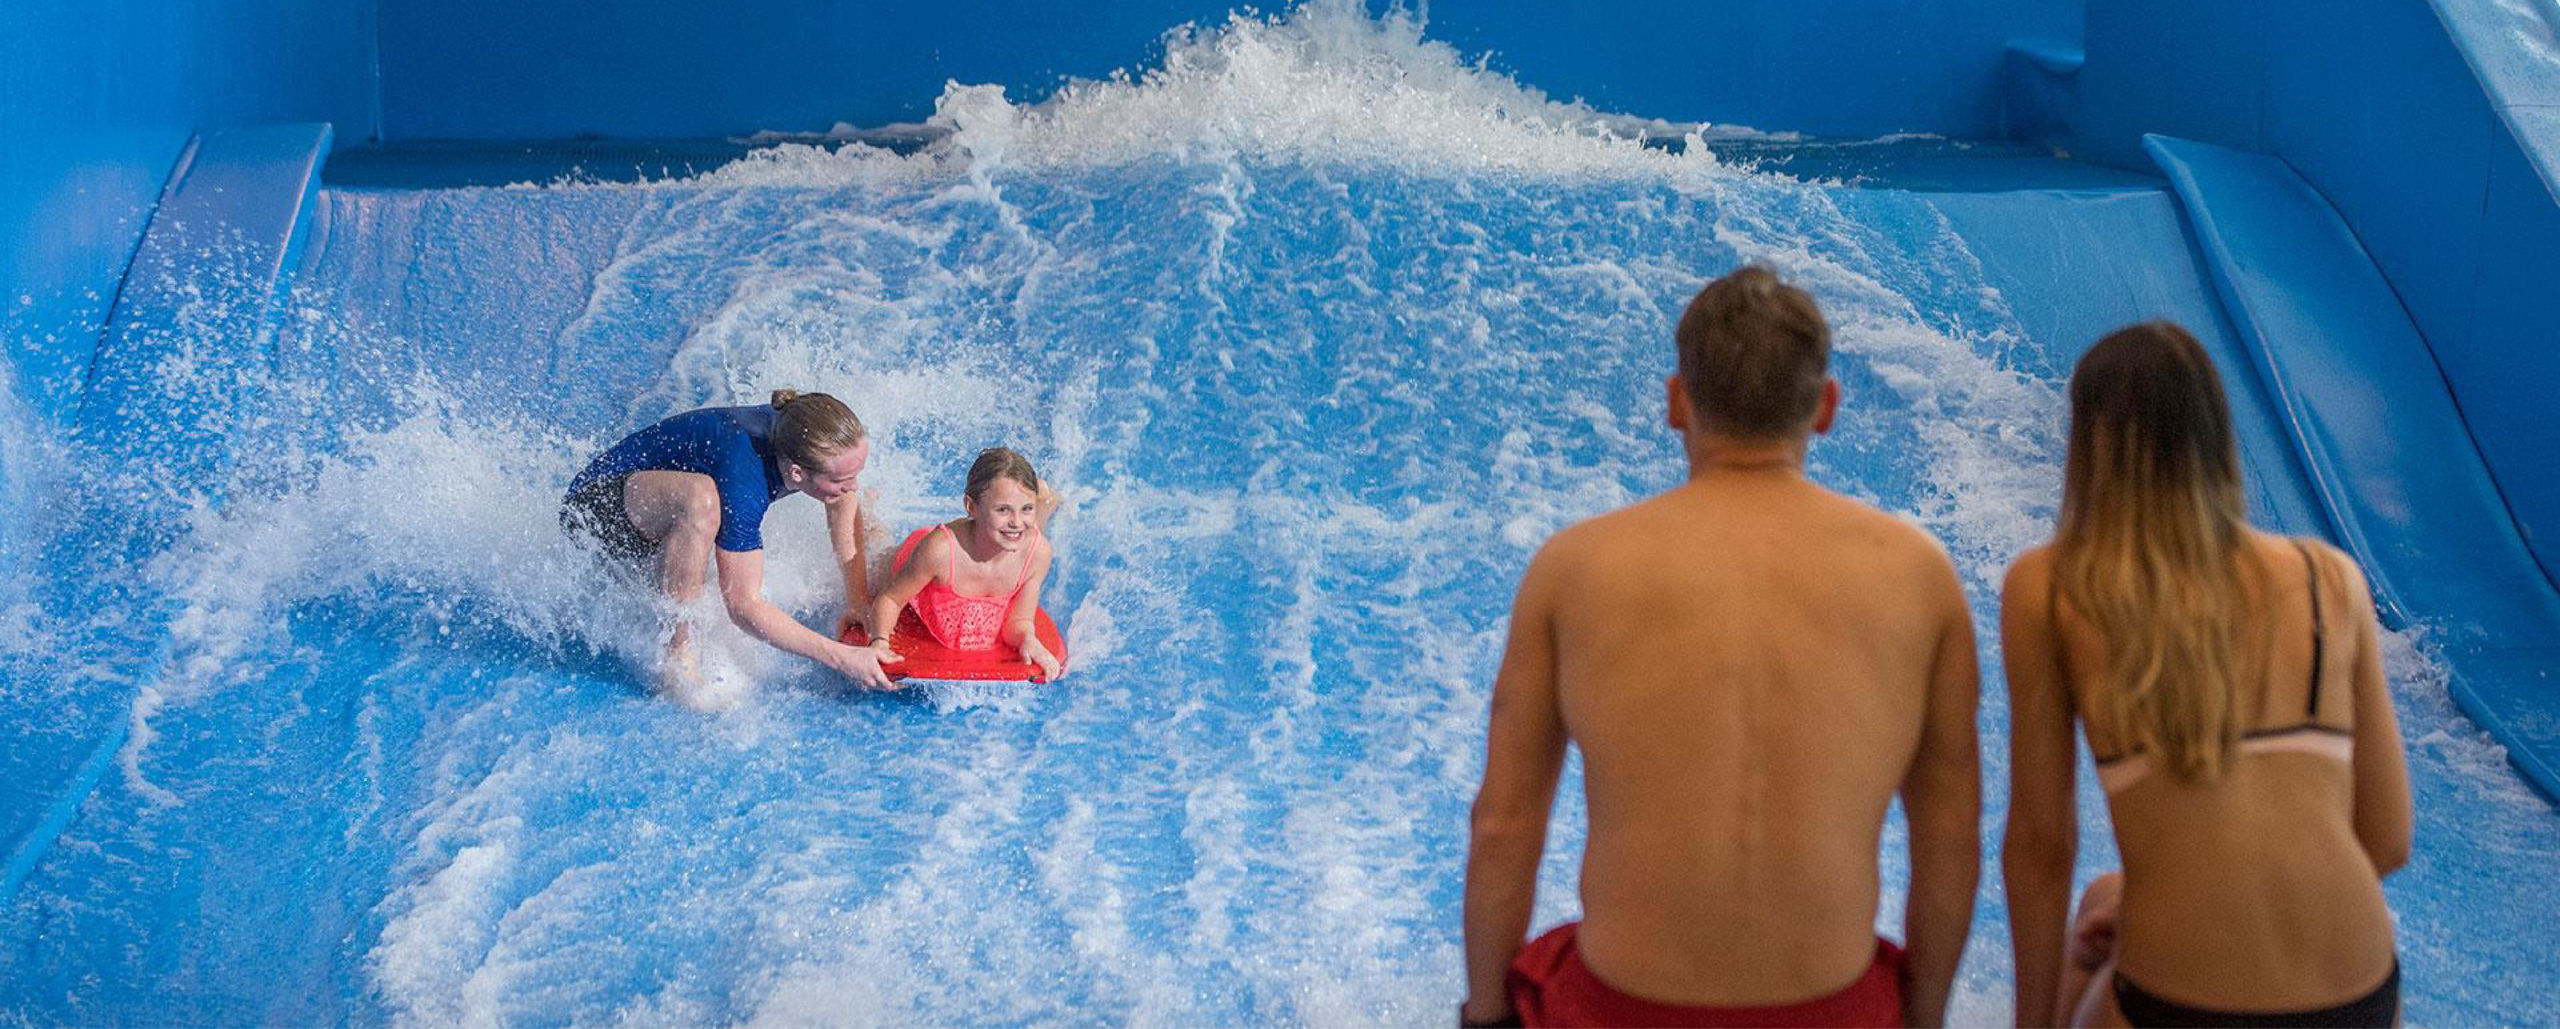 Bilde av et par som ser på barnet surfe innendørs på radisson blu i Trysil